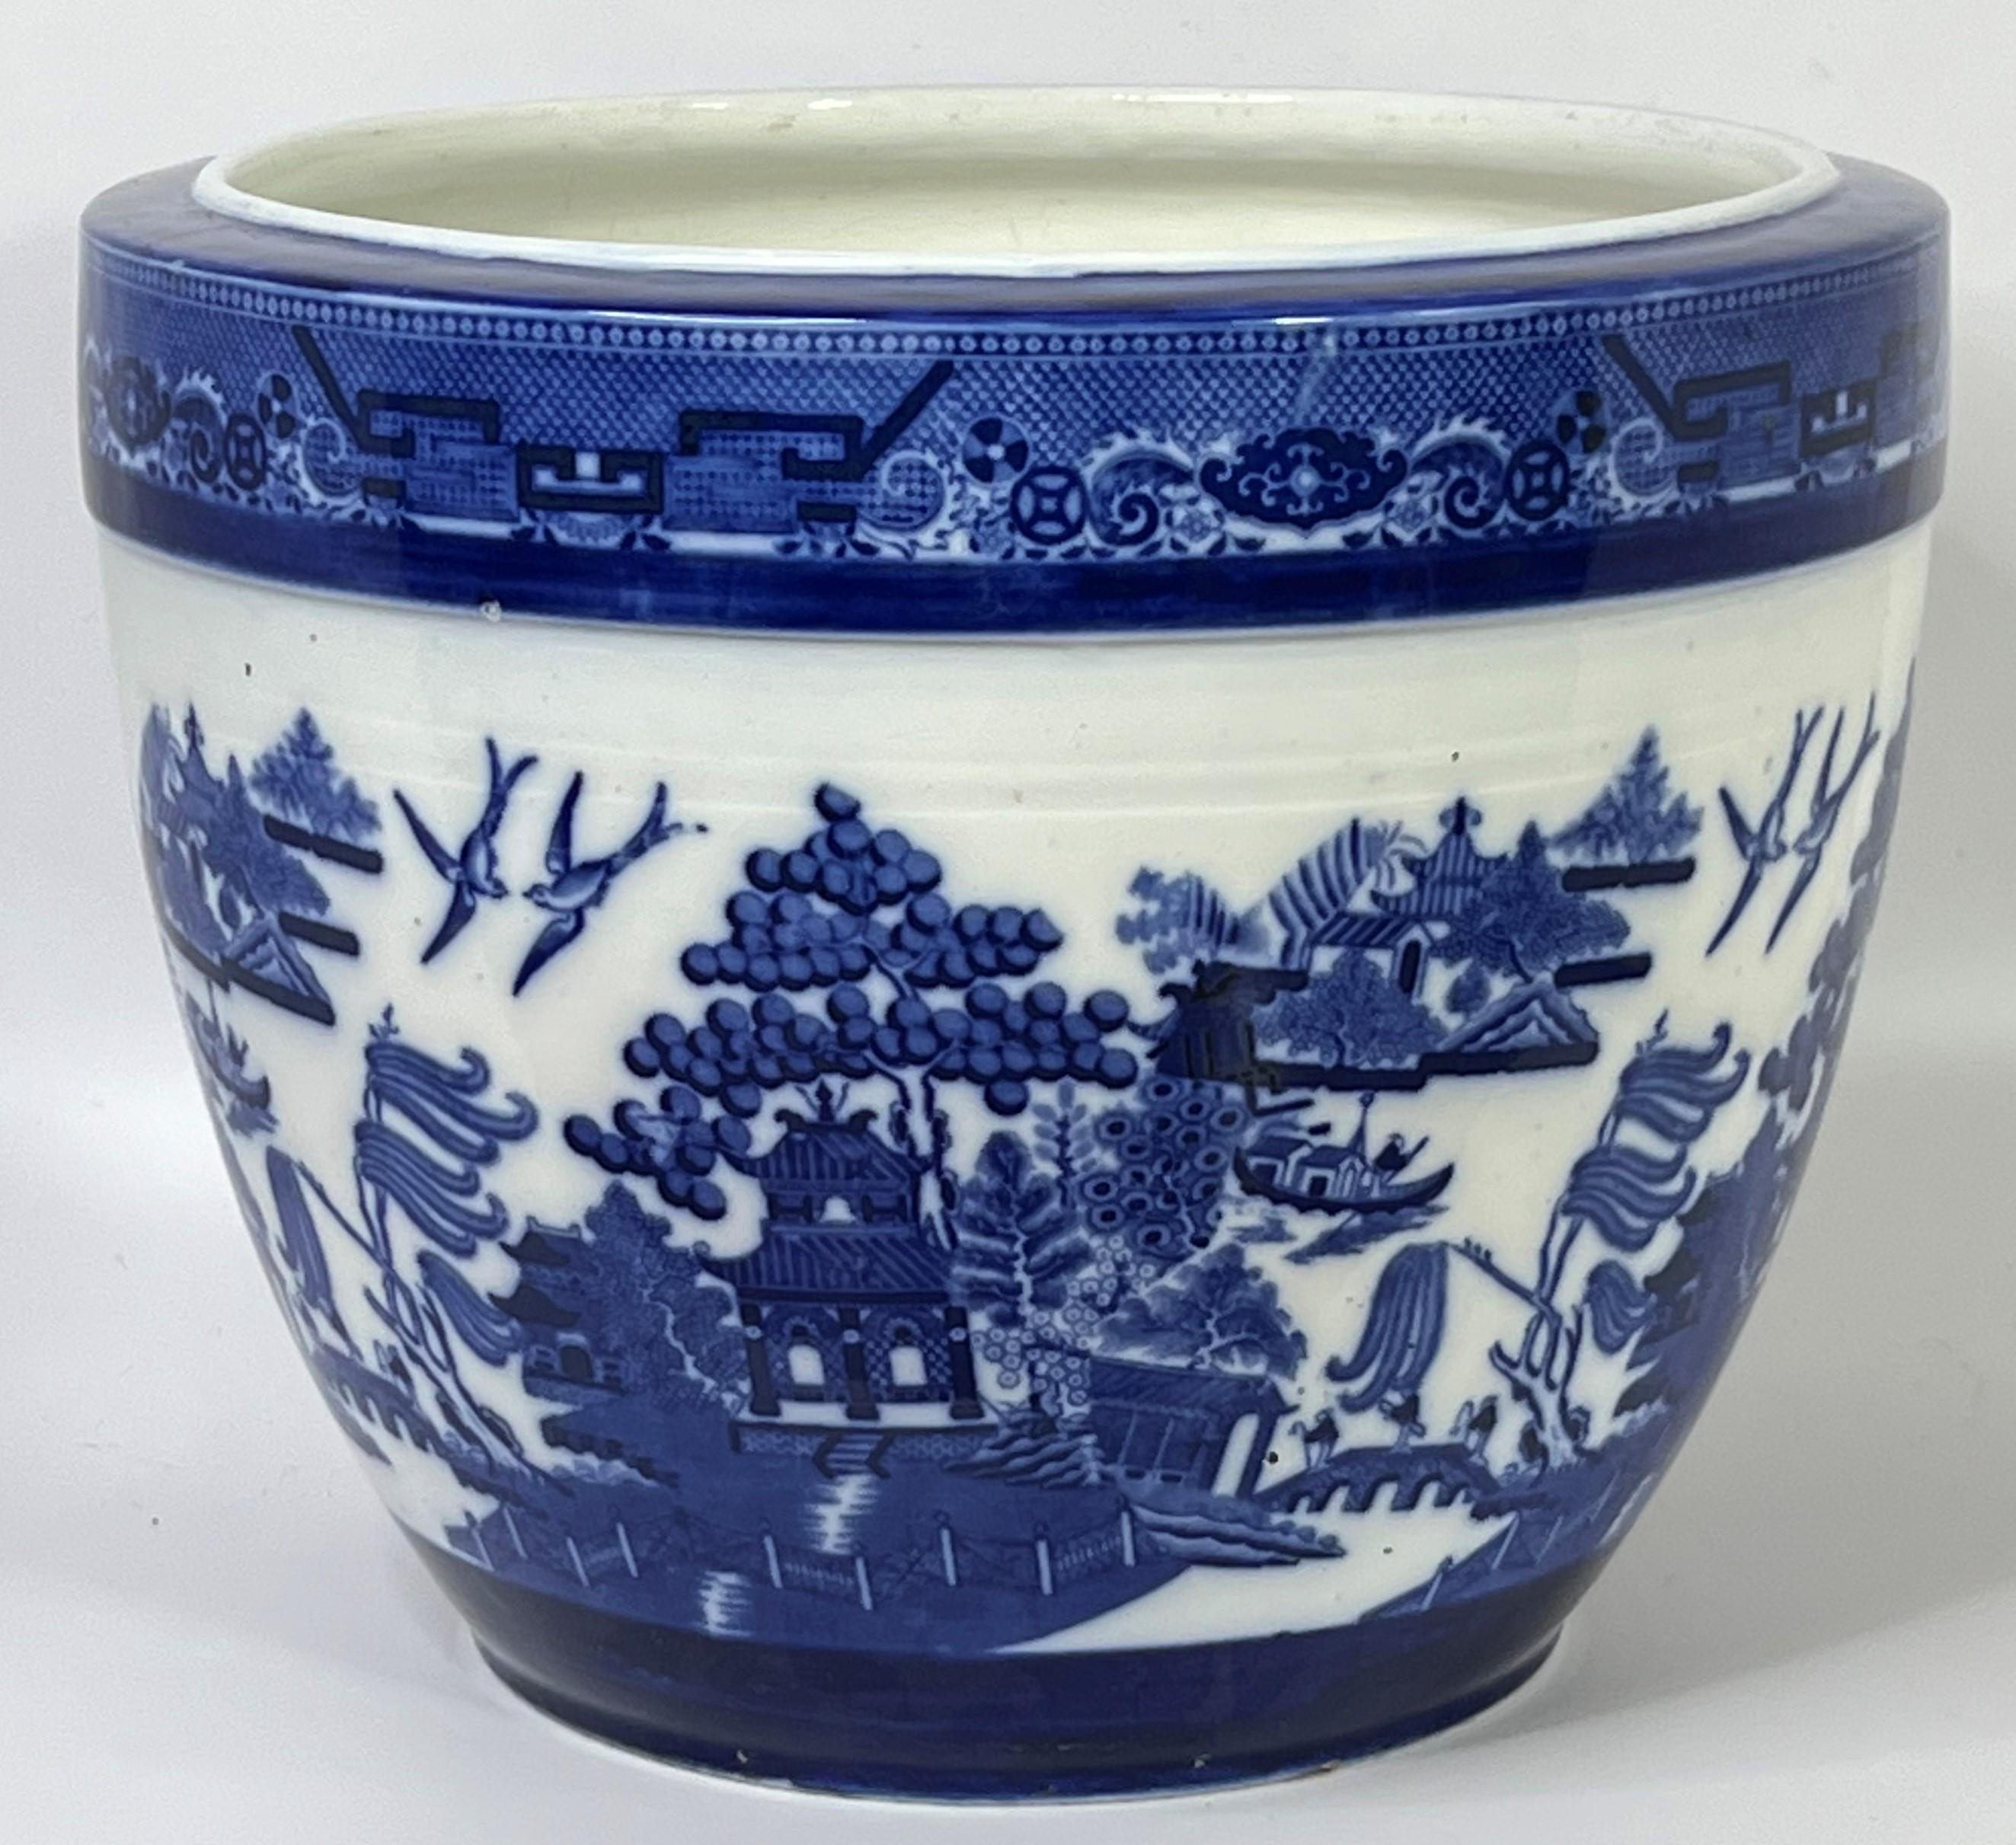 Es wird angenommen, dass Thomas Minton das berühmte Blue Willow Pattern entworfen und das Originaldesign im 18. Jahrhundert an Thomas Turner verkauft hat. Das Muster ist eindeutig vom chinesischen Exportporzellan aus Kanton inspiriert und gehört zu